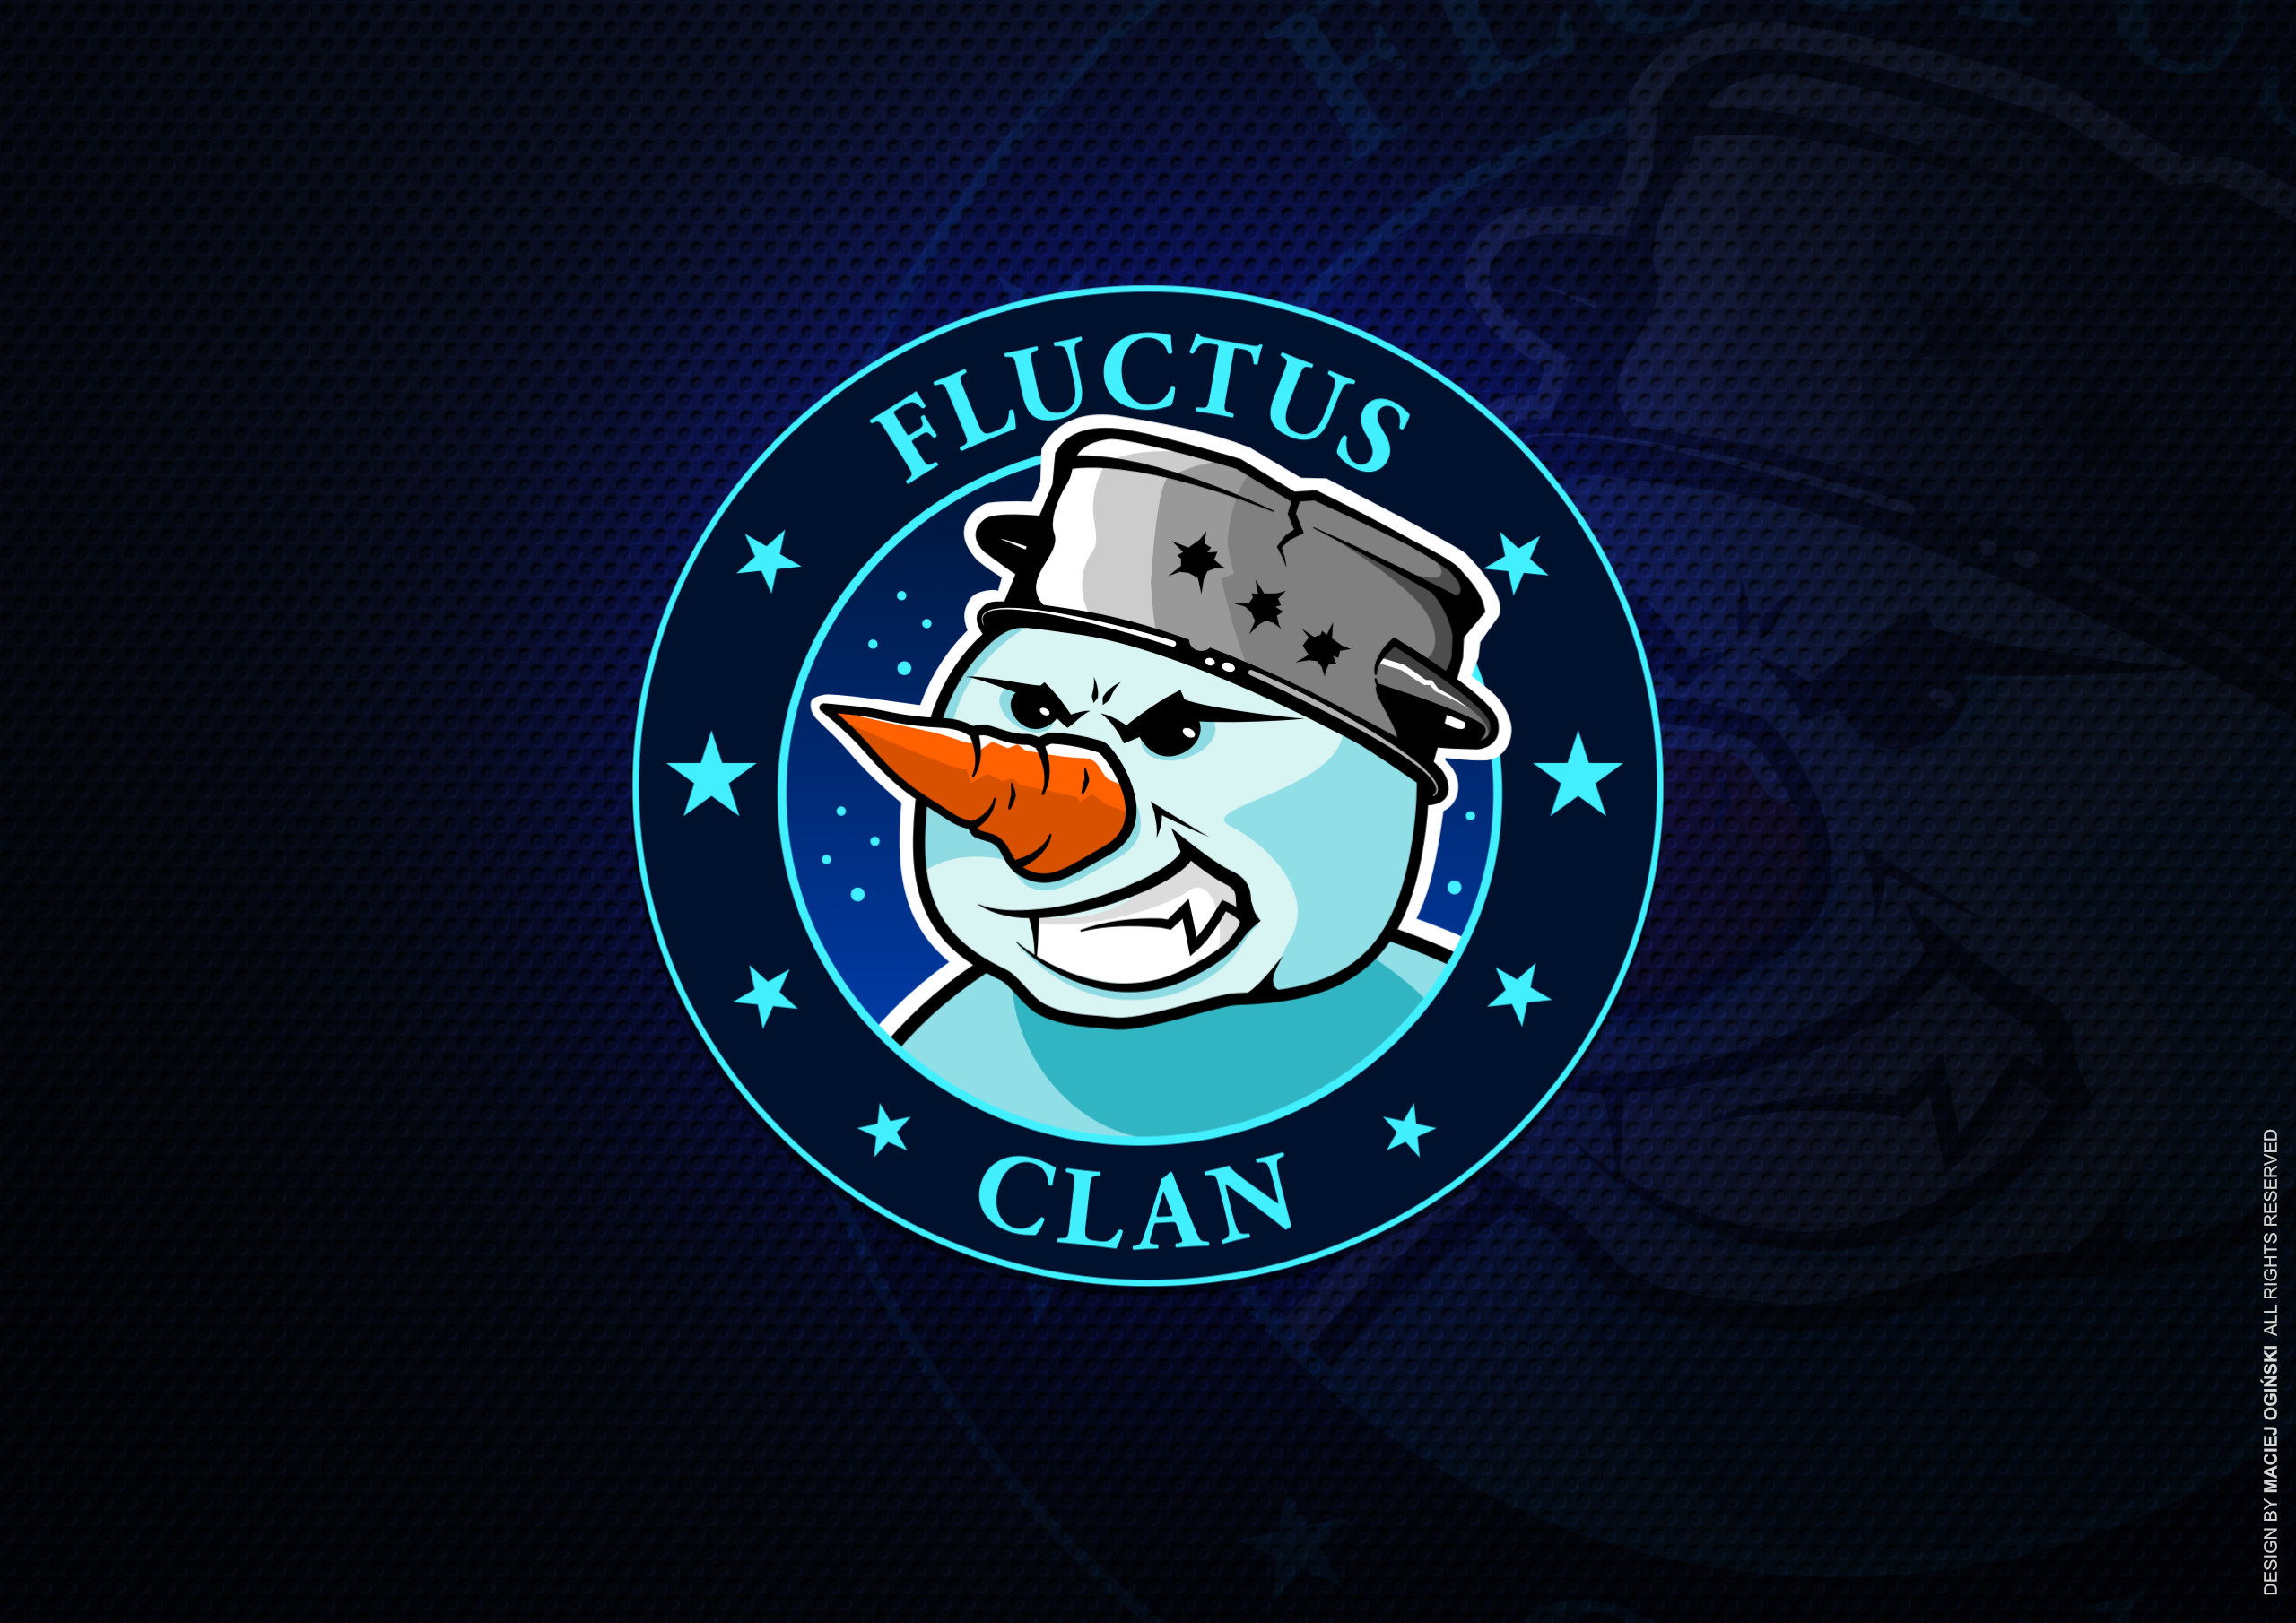 logo-fluctus-clan-ginski